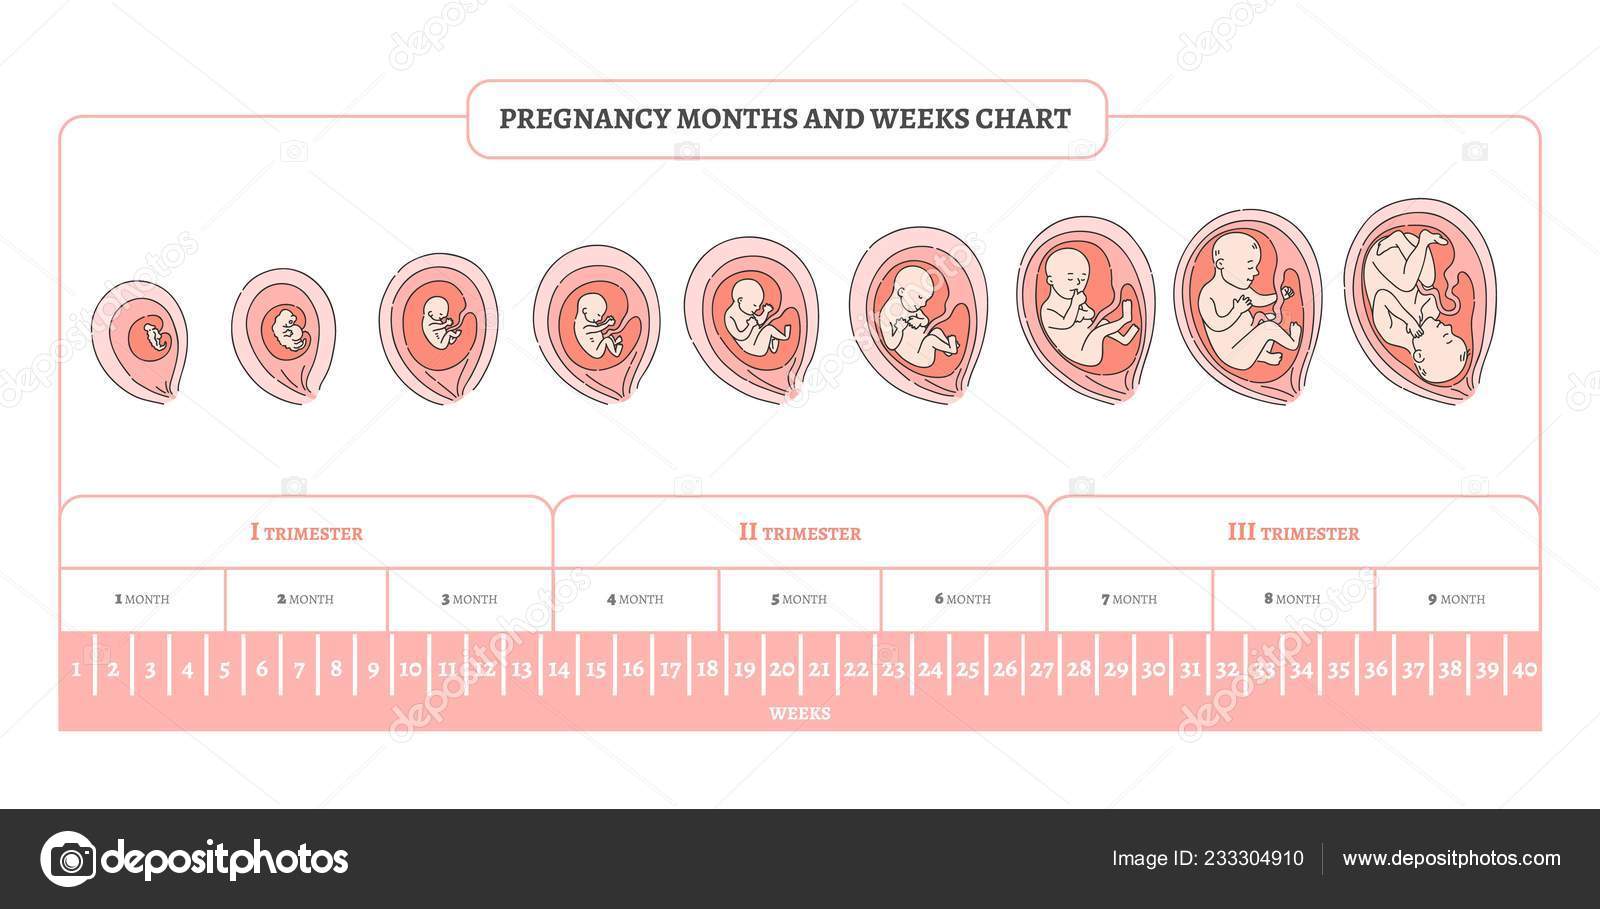 8 й недели неделе. Периоды развития плода по неделям в картинках. Стадии формирования плода по неделям беременности. Триместры беременности по неделям и месяцам таблица. Периоды развития плода по триместрам.